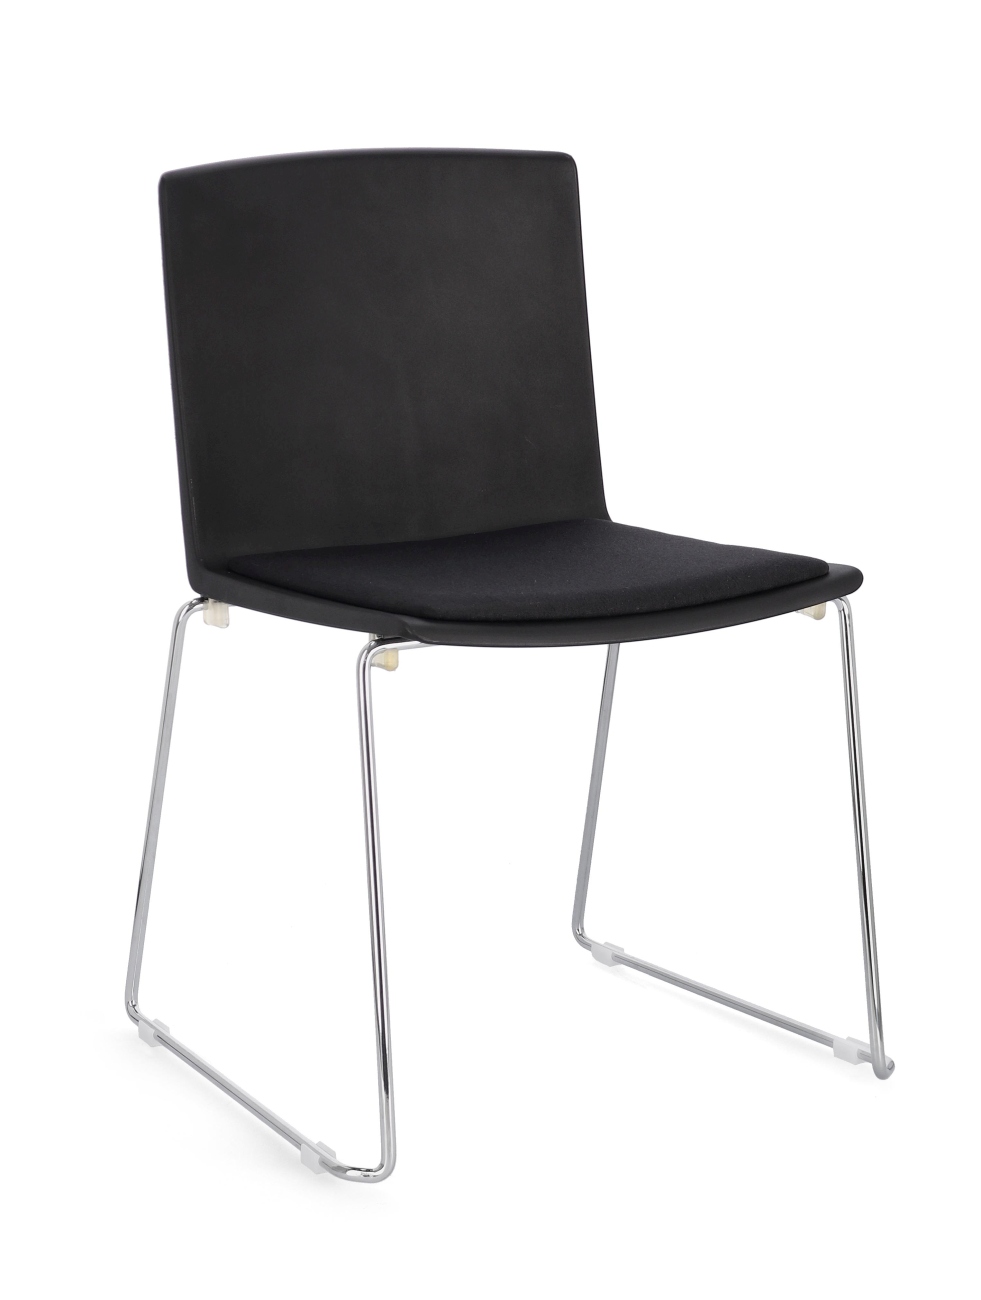 Der Esszimmerstuhl Giulia überzeugt mit seinem modernen Stil. Gefertigt wurde er aus Kunststoff, welches einen schwarzen Farbton besitzt. Das Gestell ist aus Metall und hat eine silberne Farbe. Der Stuhl besitzt eine Sitzhöhe von 46 cm.